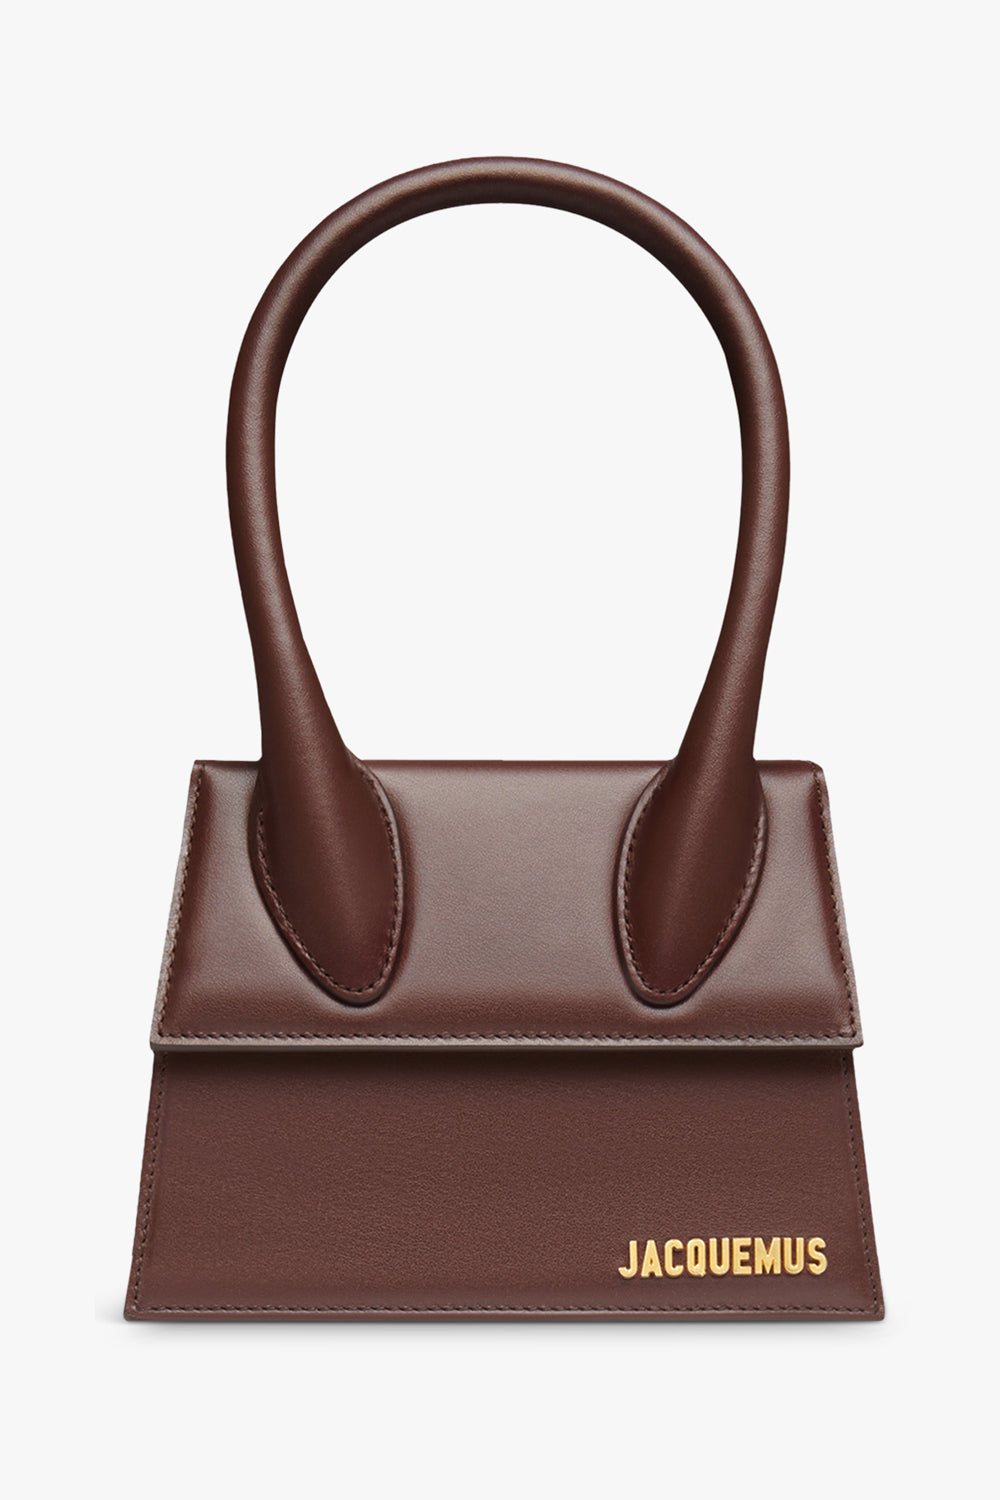 NEW Authentic Louis Vuitton Foldover Dust Bag LARGE SIZE 18 X 13.5” Beige  Cotton